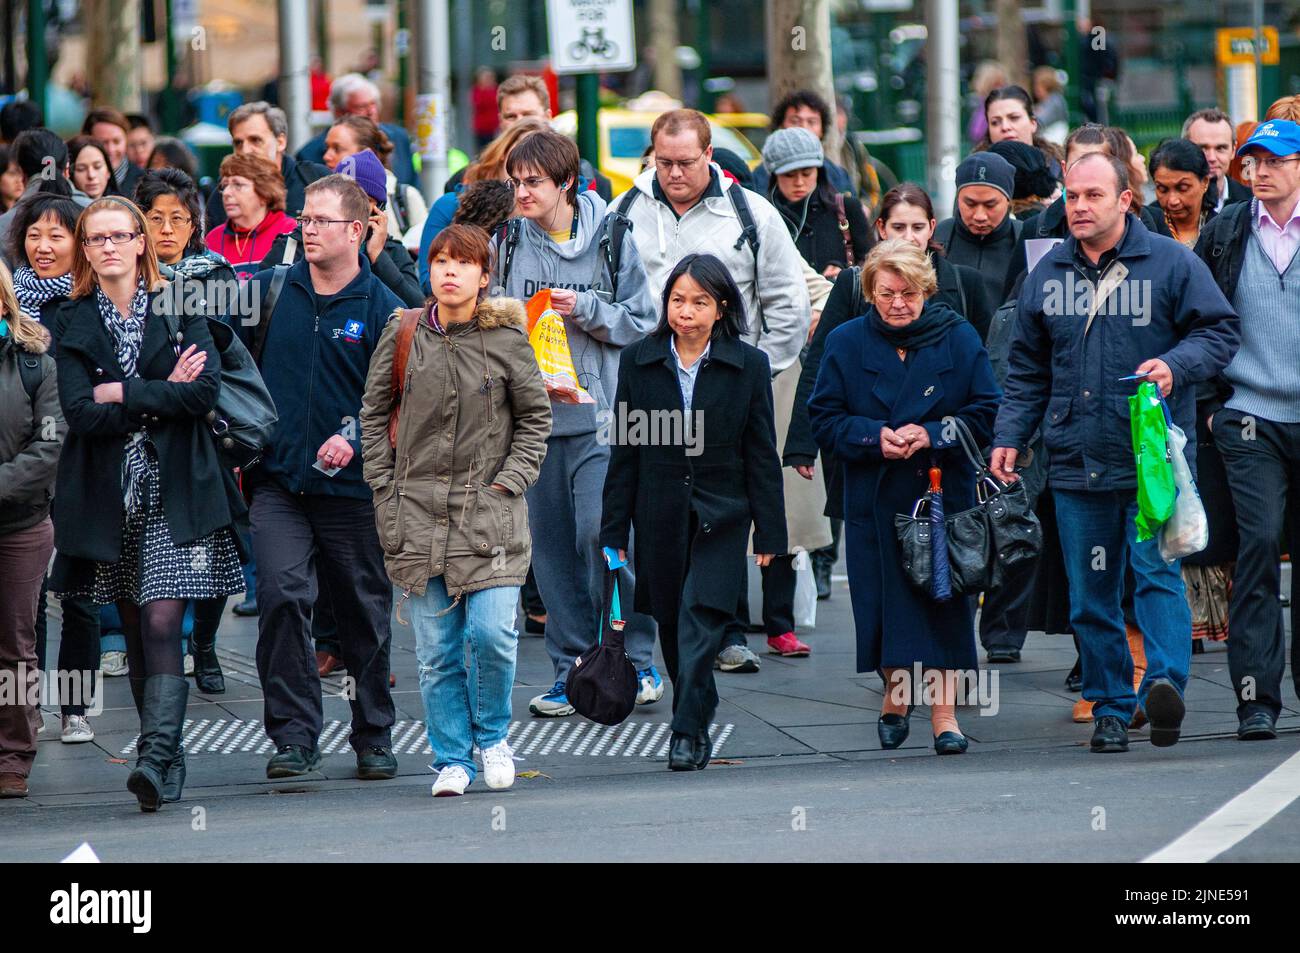 Les voyageurs de Melbourne à destination de Homeward se dirigent vers la gare de Flinders Street après avoir travaillé pendant une journée d'hiver Banque D'Images